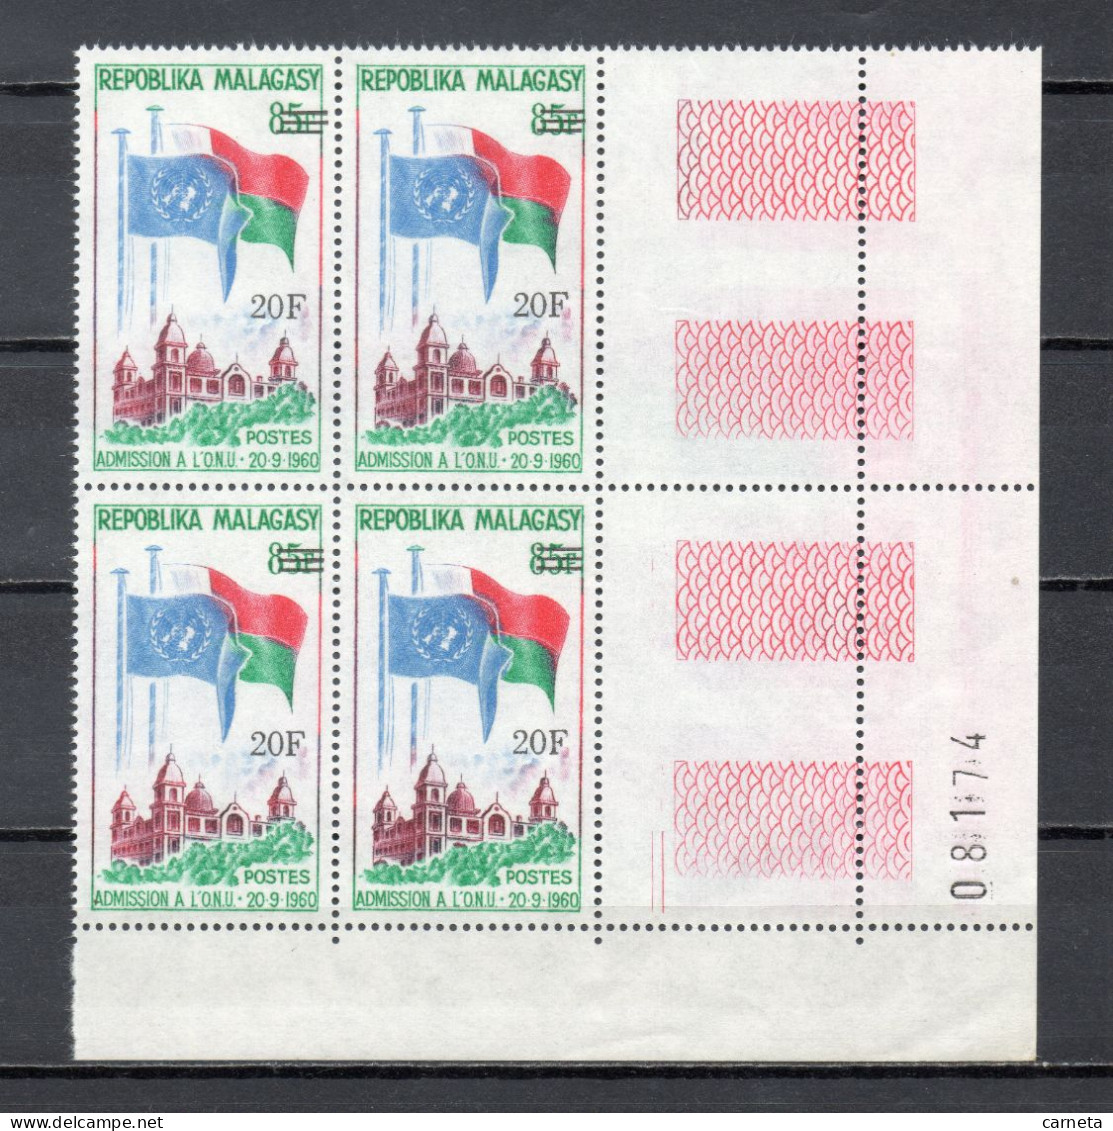 MADAGASCAR   N° 447   BLOC DE QUATRE TIMBRES    NEUF SANS CHARNIERE  COTE  4.00€   NATIONS UNIES DRAPEAUX - Madagascar (1960-...)